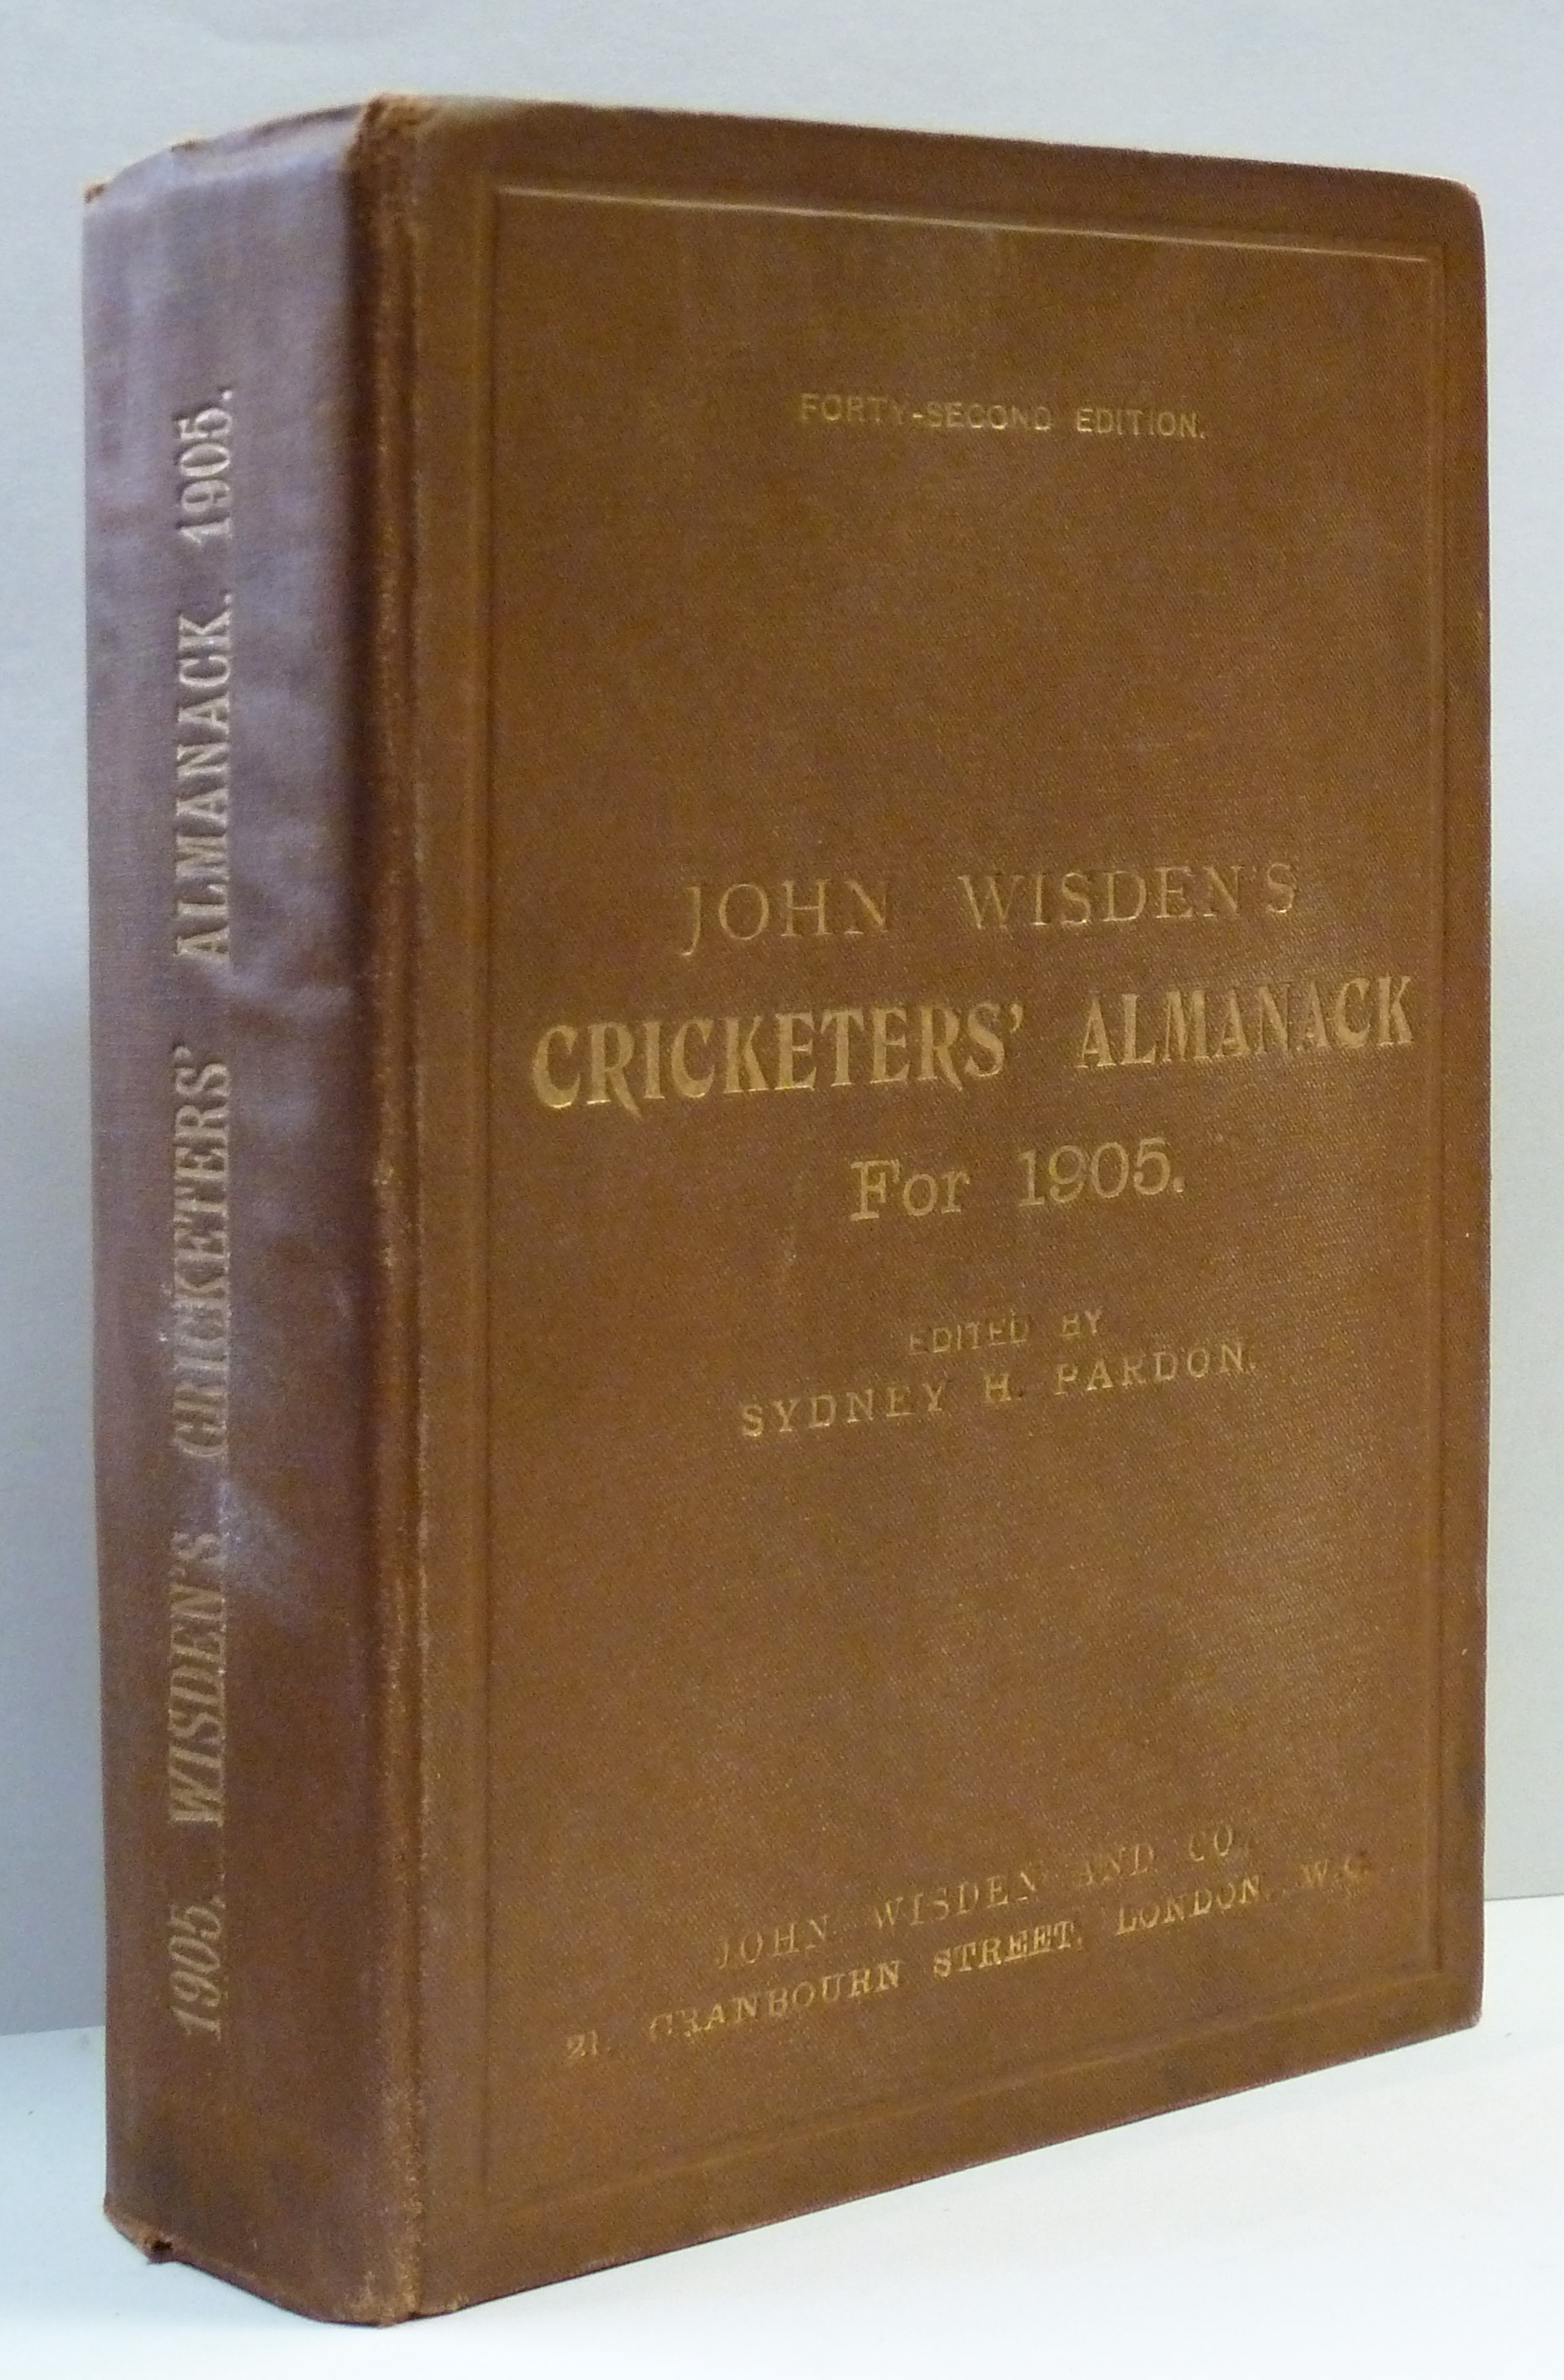 John Wisden's Cricketers' Almanack for 1905